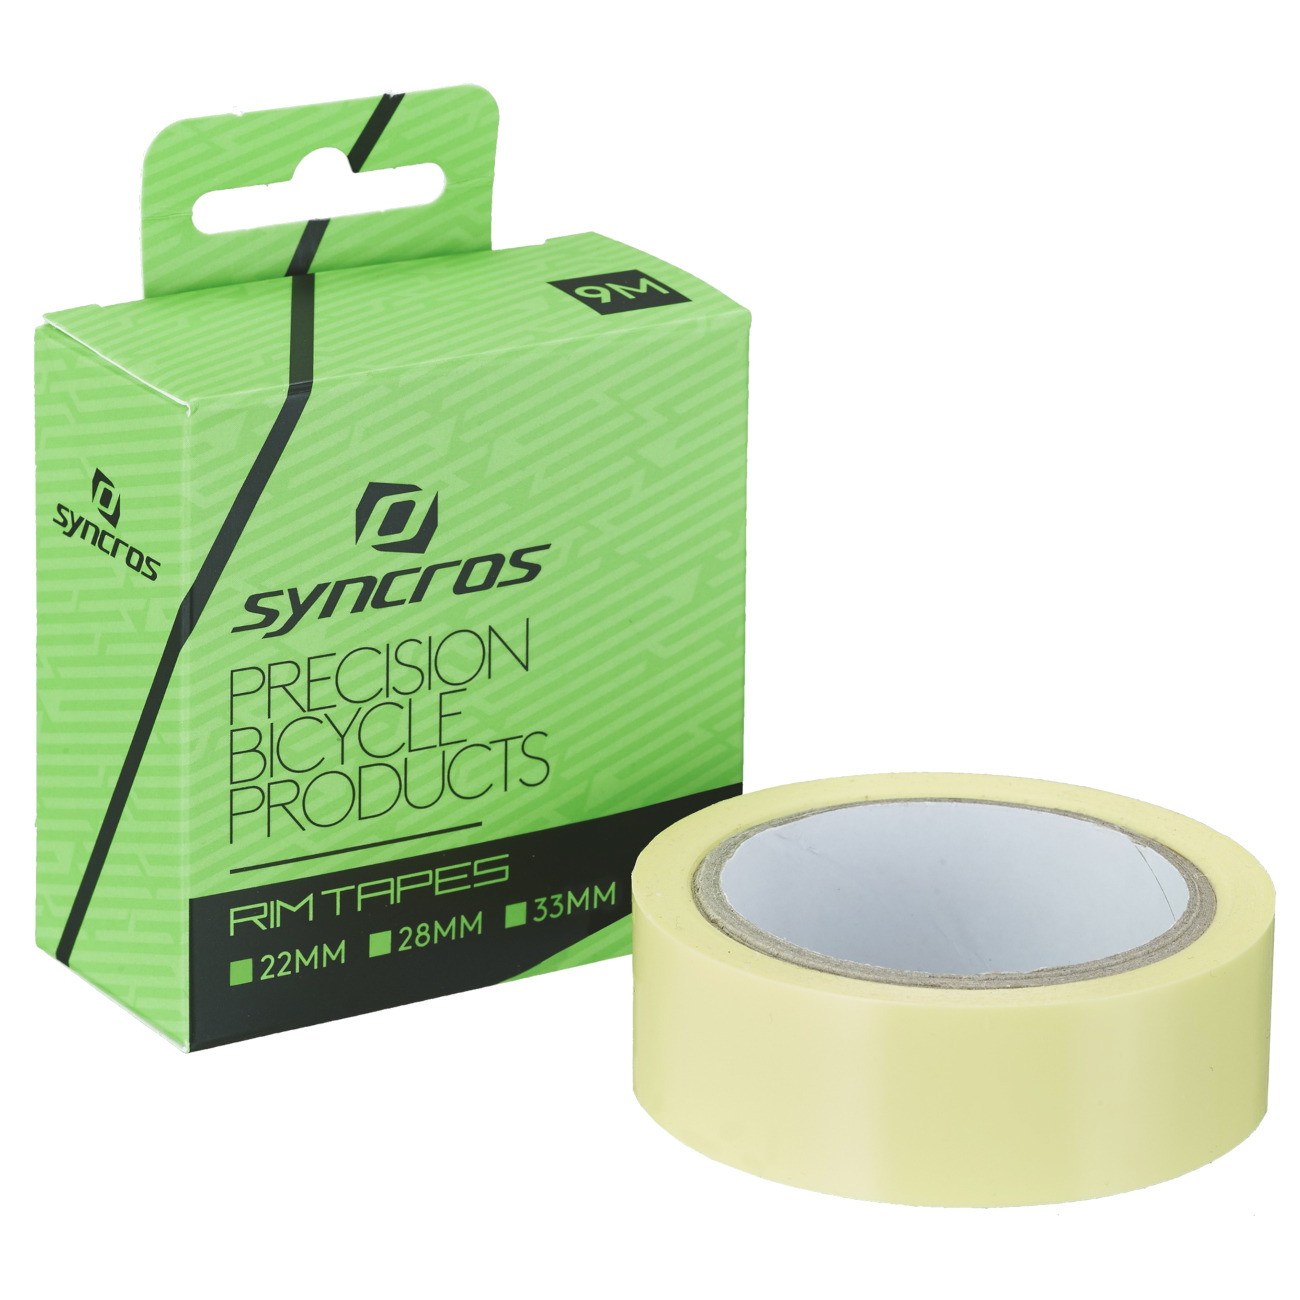 Productfoto van Syncros Tubeless Rim Tape - 22mm